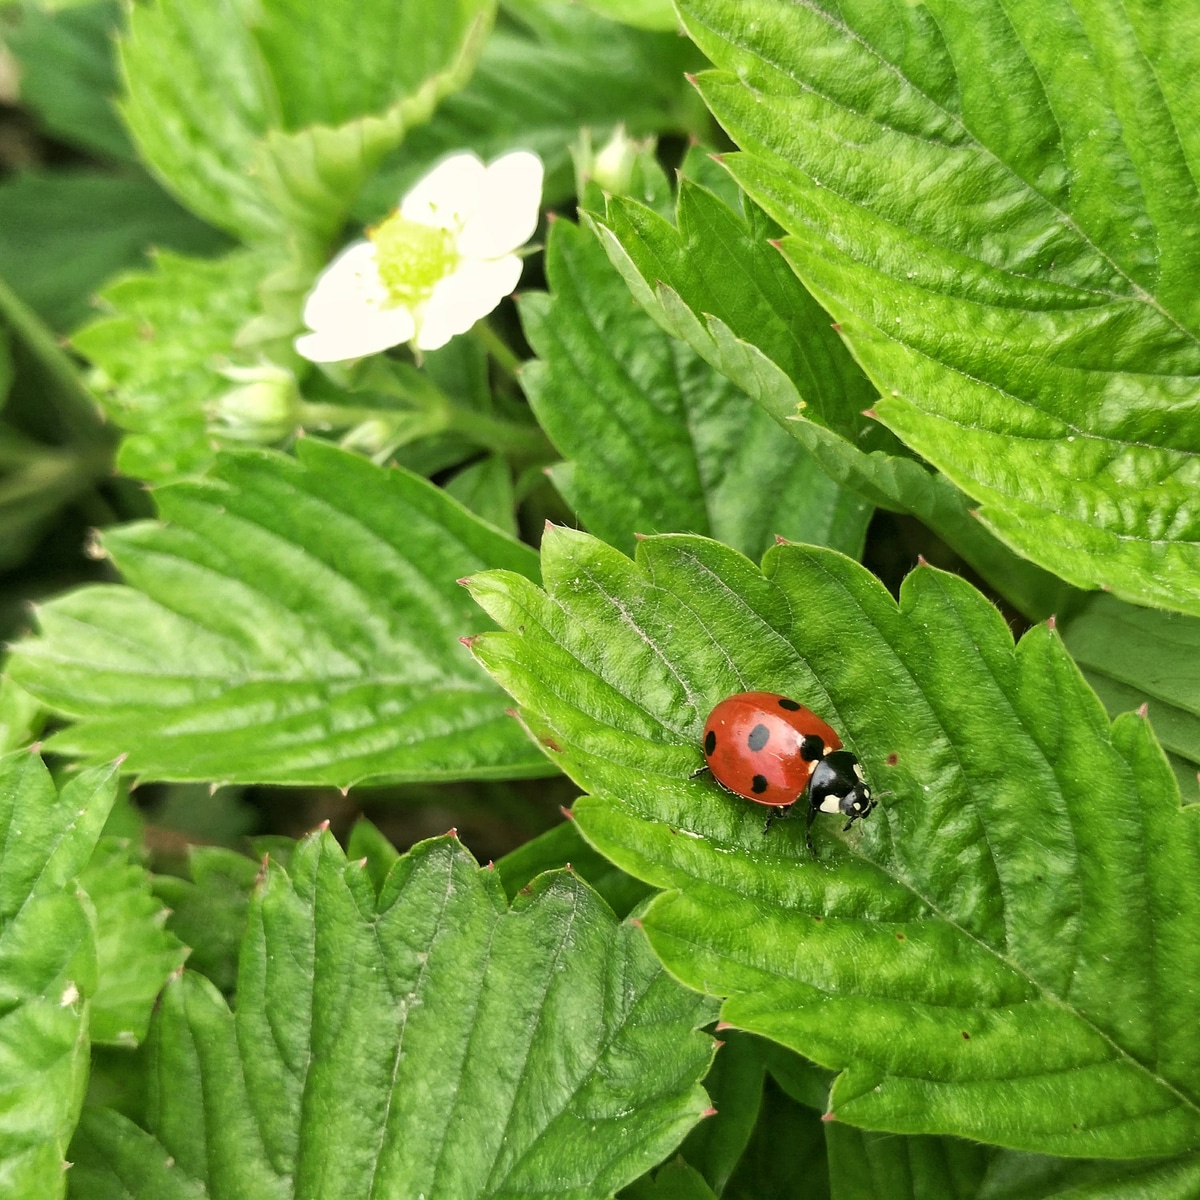 Ladybug on strawberry leaves.